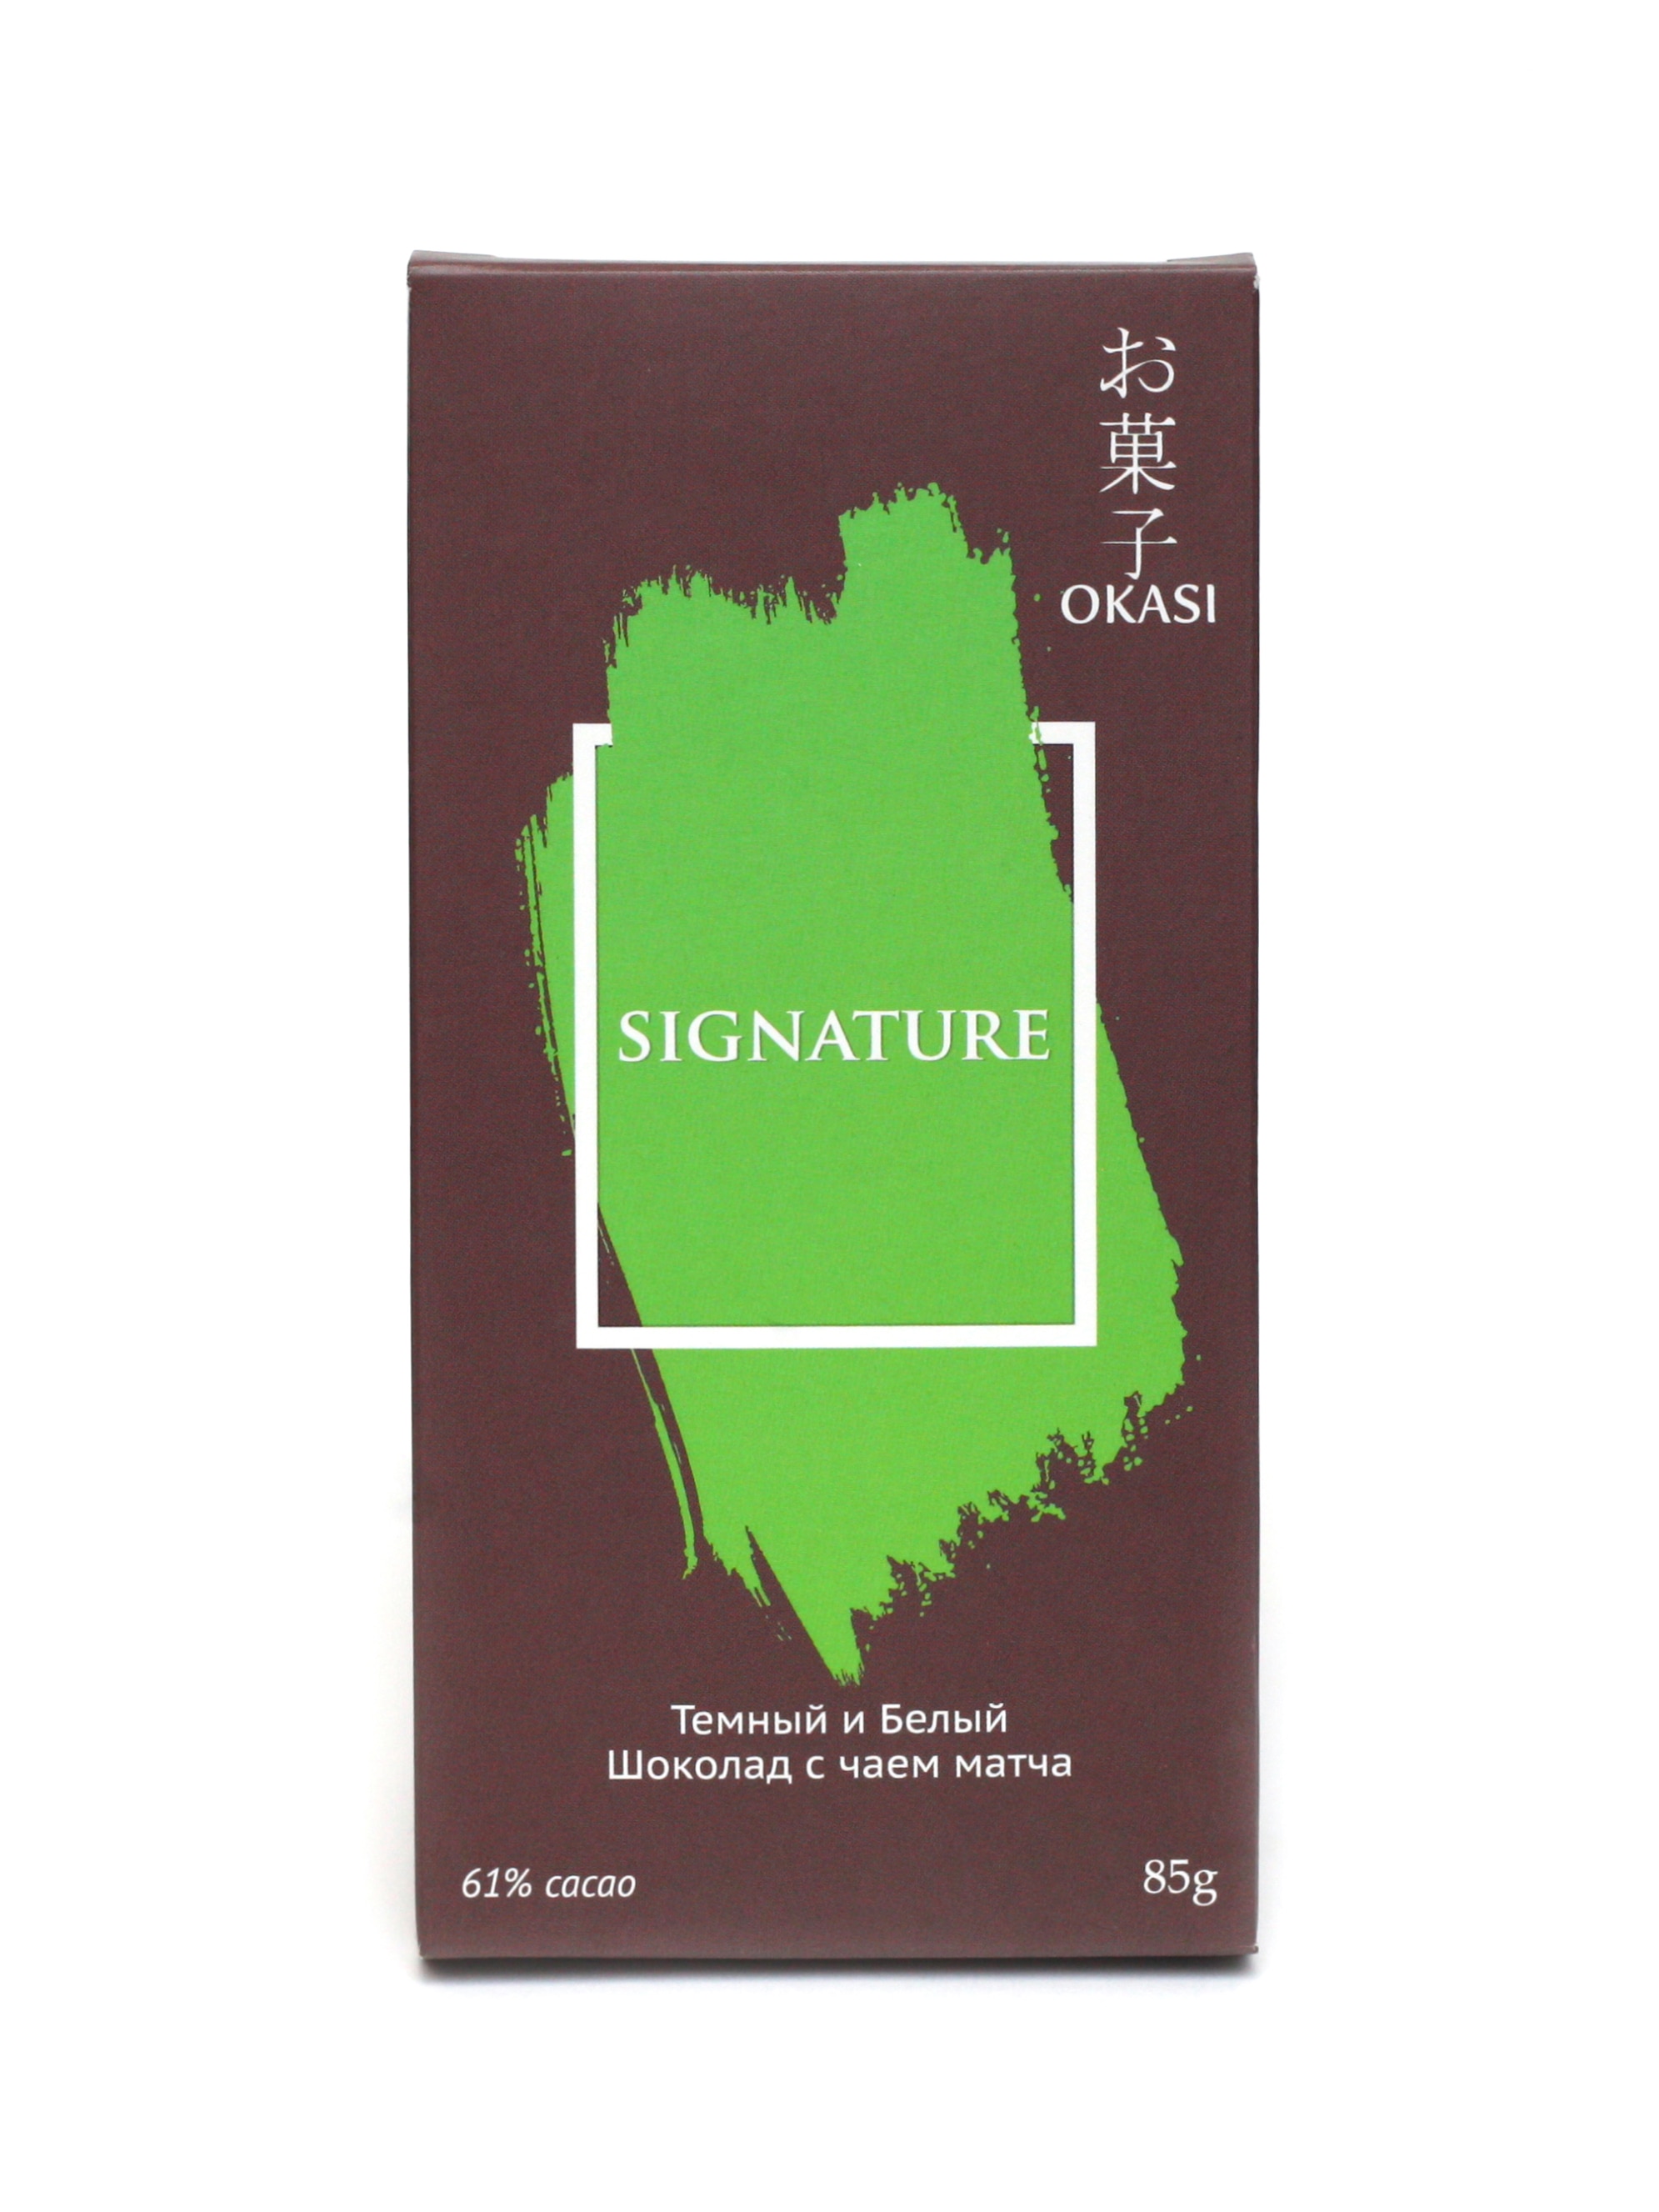 Okasi Signature 61% Темный и Белый Шоколад с чаем матча, 85 гр.